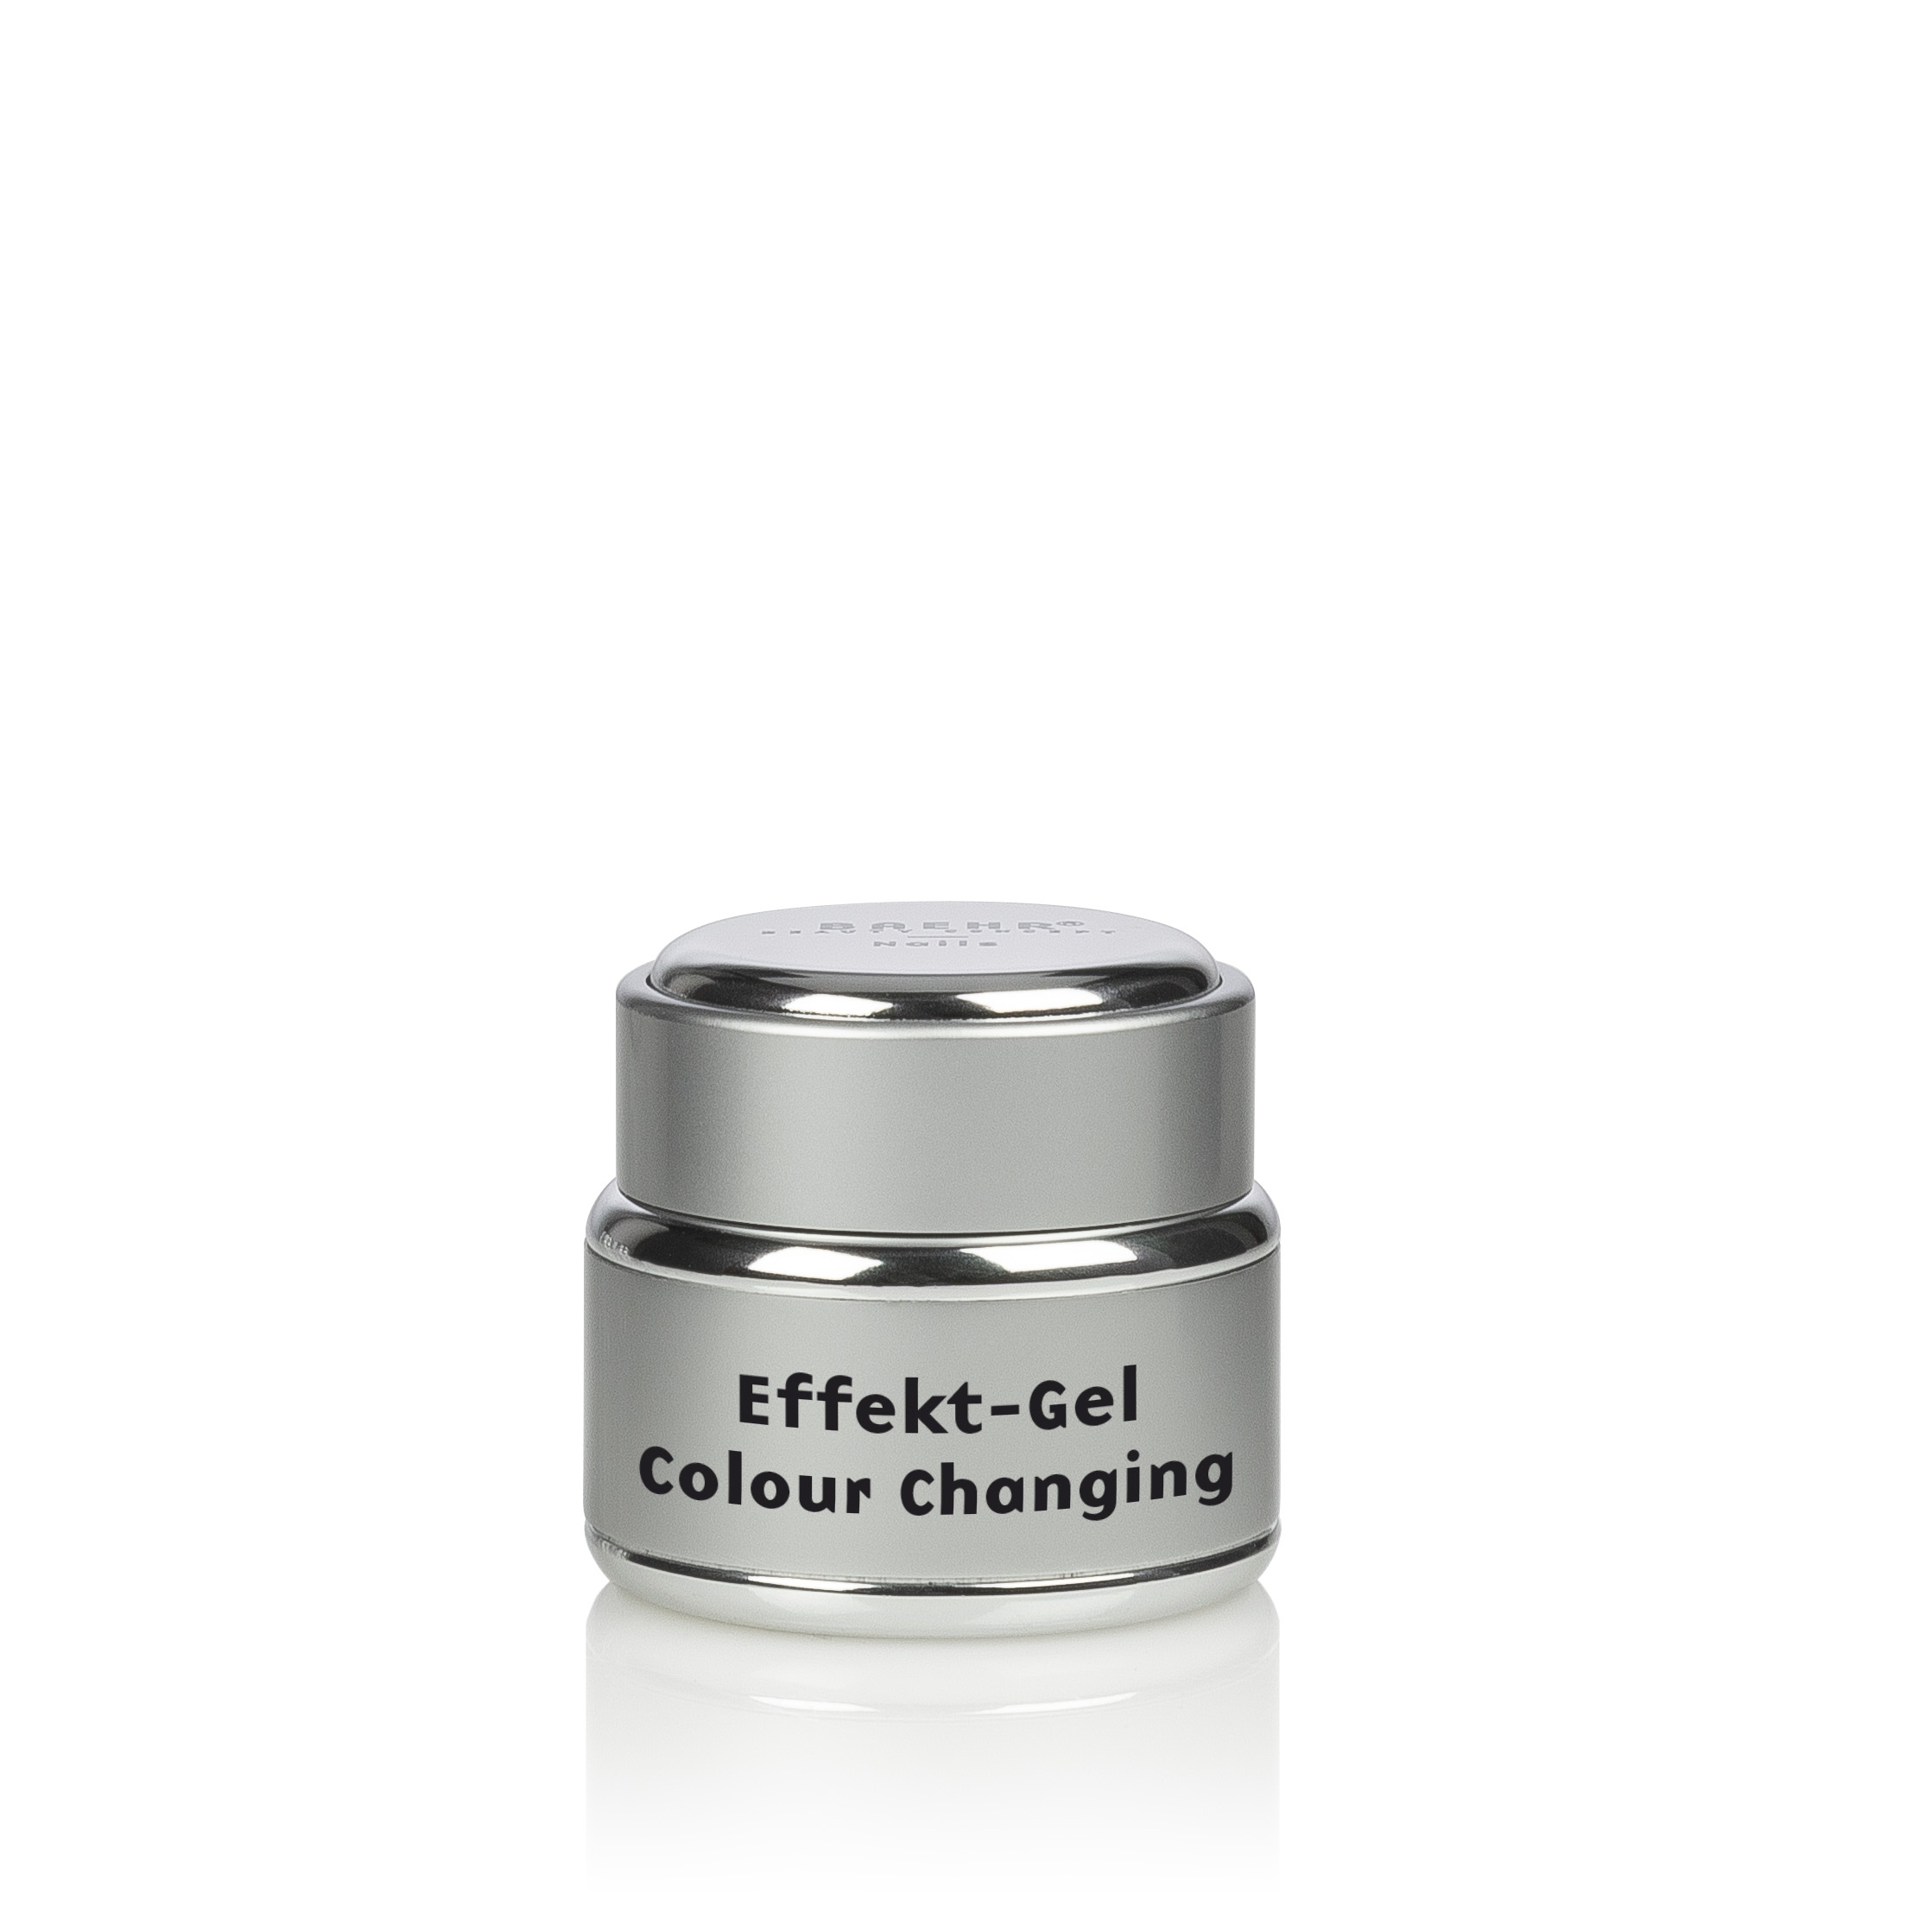 BAEHR BEAUTY CONCEPT - NAILS Effekt-Gel Colour Changing 5 ml